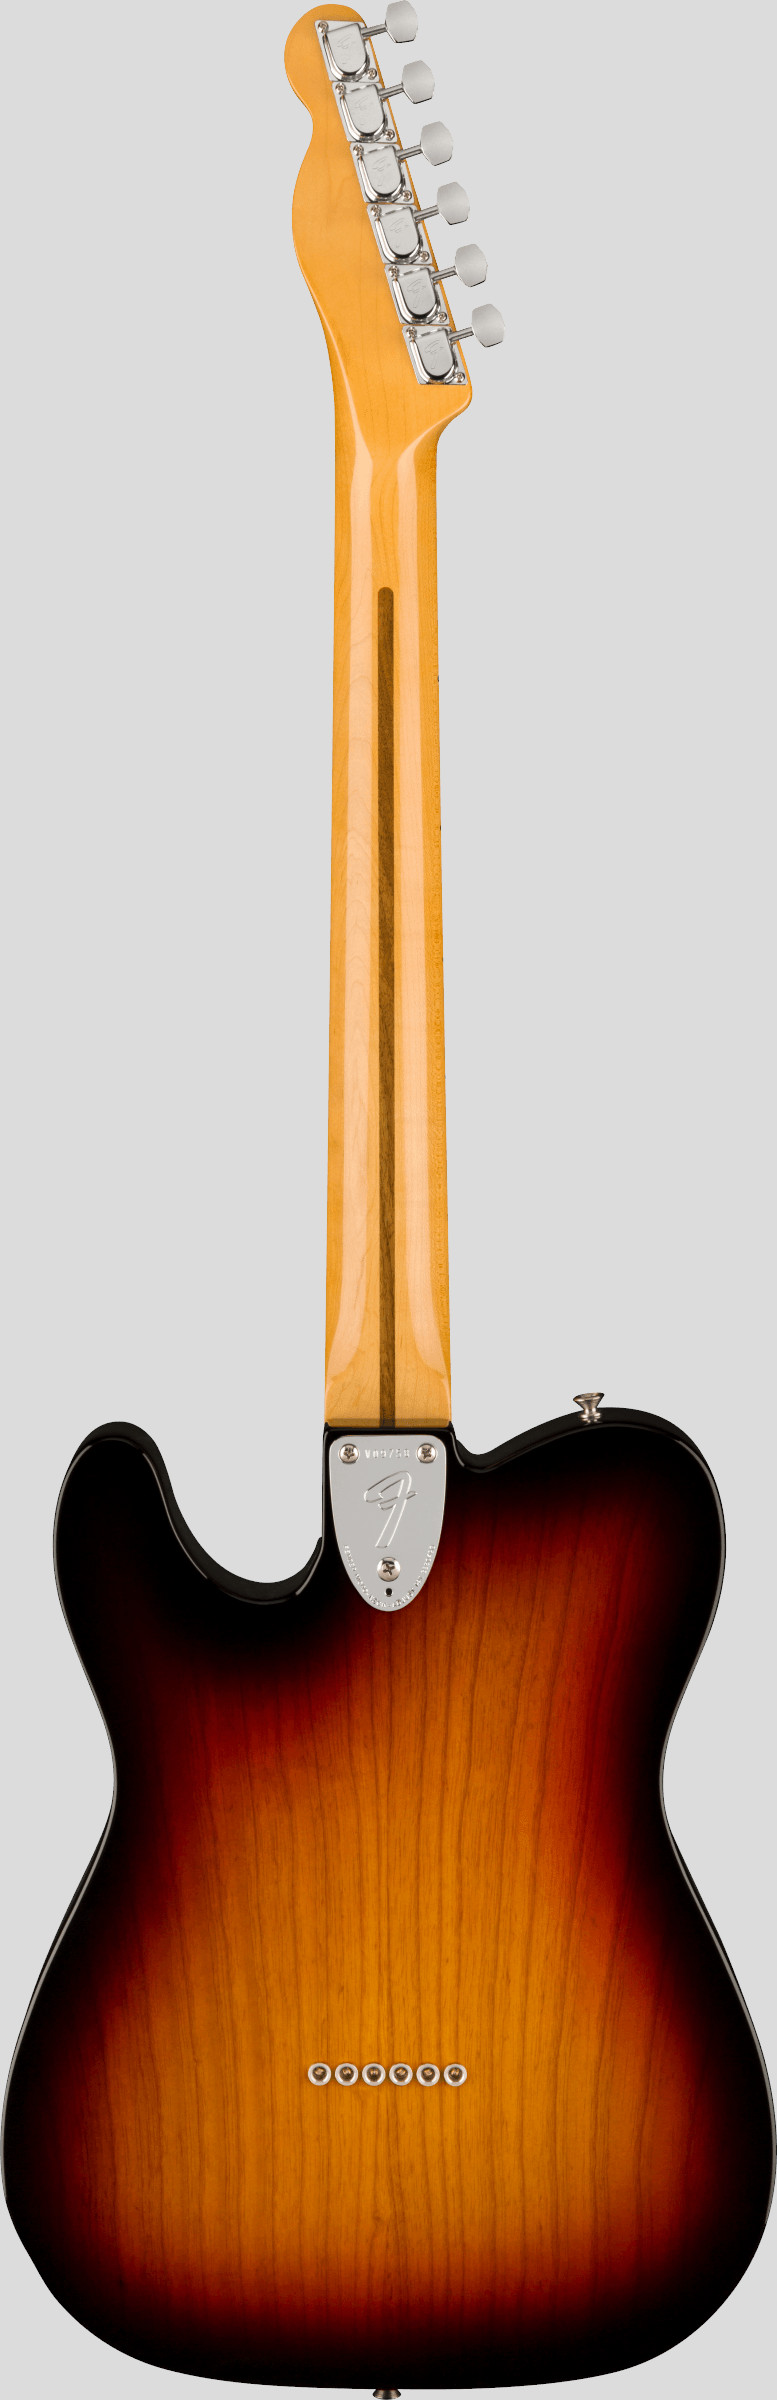 Fender American Vintage II 1972 Telecaster Thinline 3-Color Sunburst 2